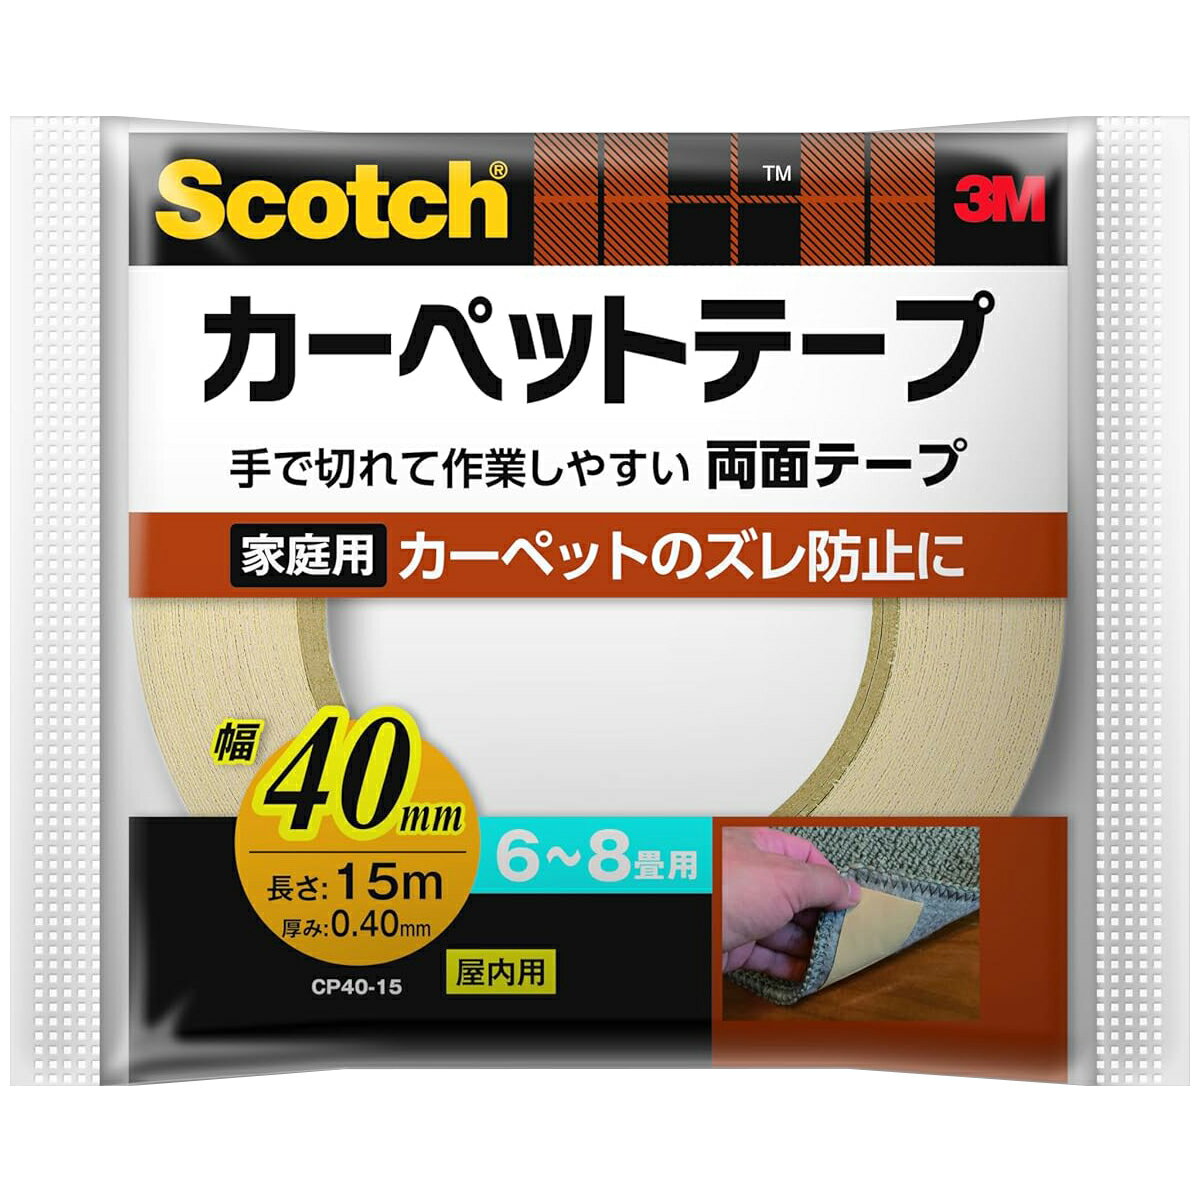 まとめ買い 30個入 Scotch カーペットテープ CP40-15 厚み0.4mm 幅40mm 長さ15m 3M 6~8畳用 家庭用 屋内用 手で切れて作業しやすい 両面テープ